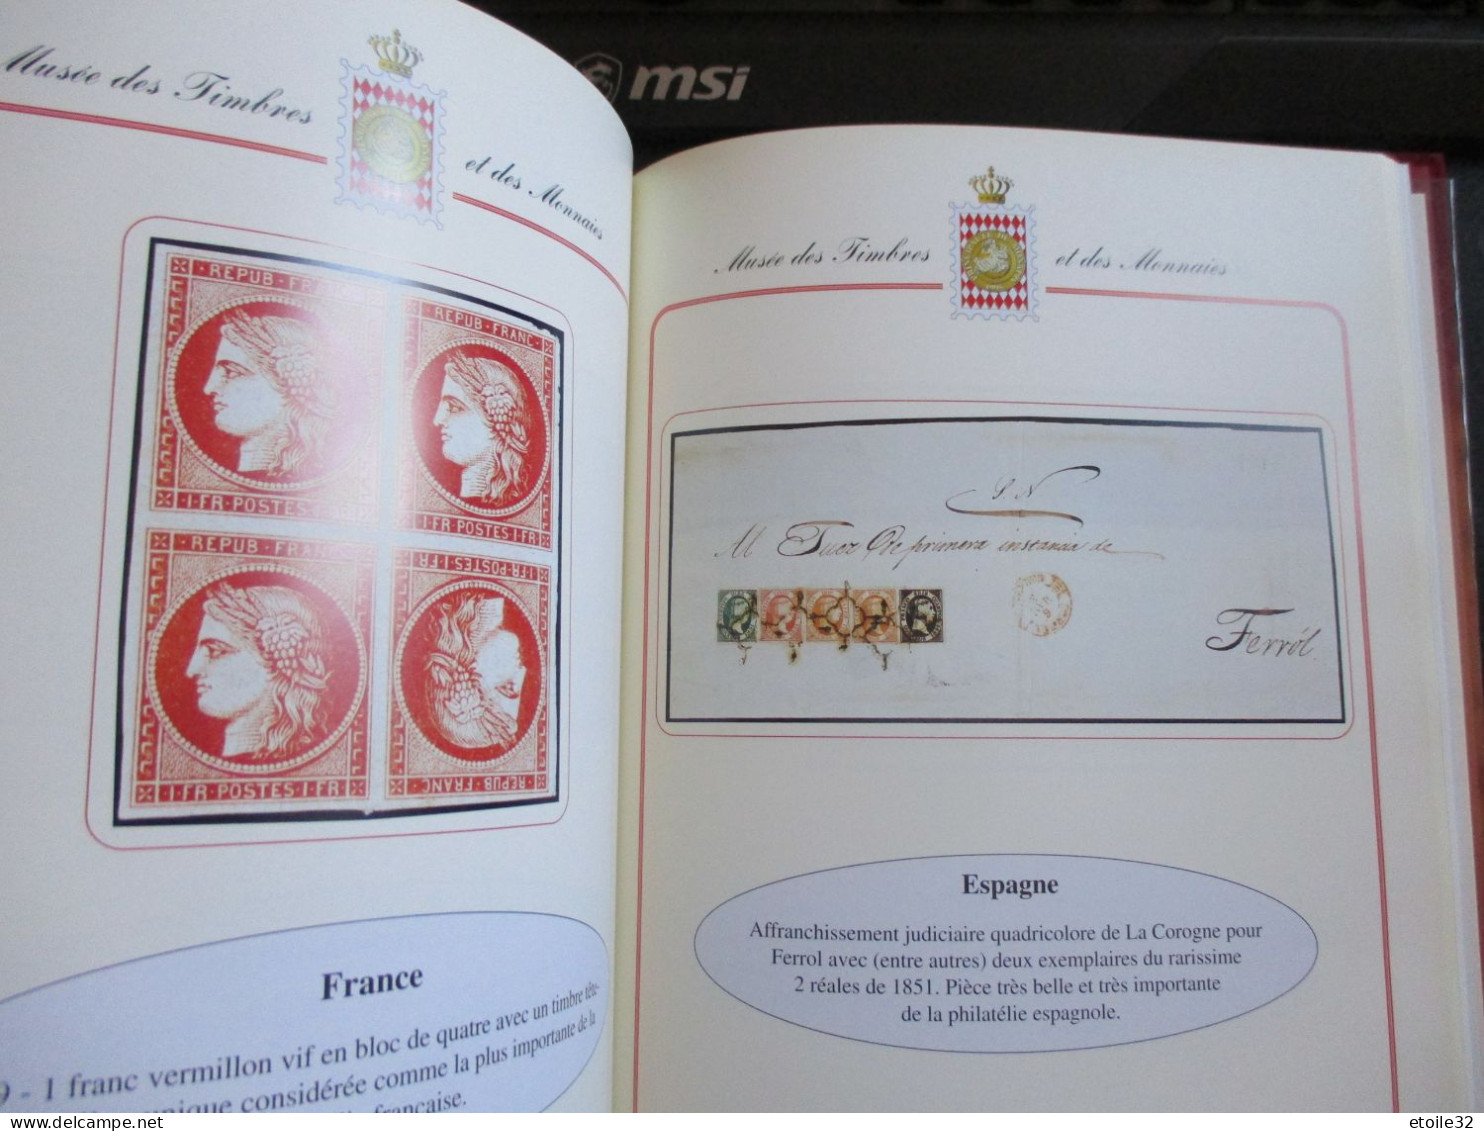 timbres et documents parmi les plus rare du monde superbe